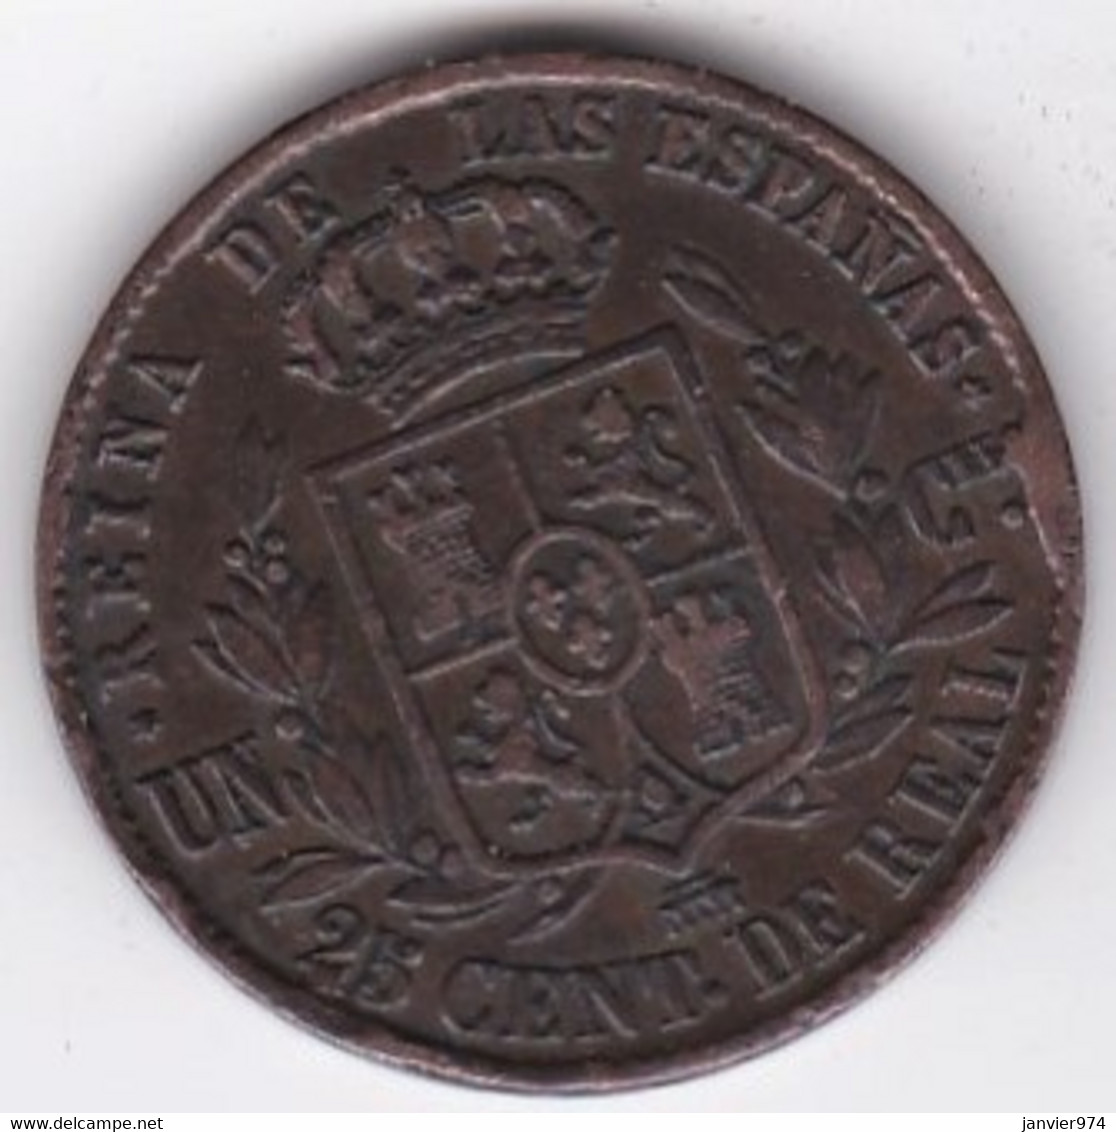 Espagne 25 Centimos De Real 1855 Segovia . ISABEL II, En Cuivre, KM# 615 - First Minting